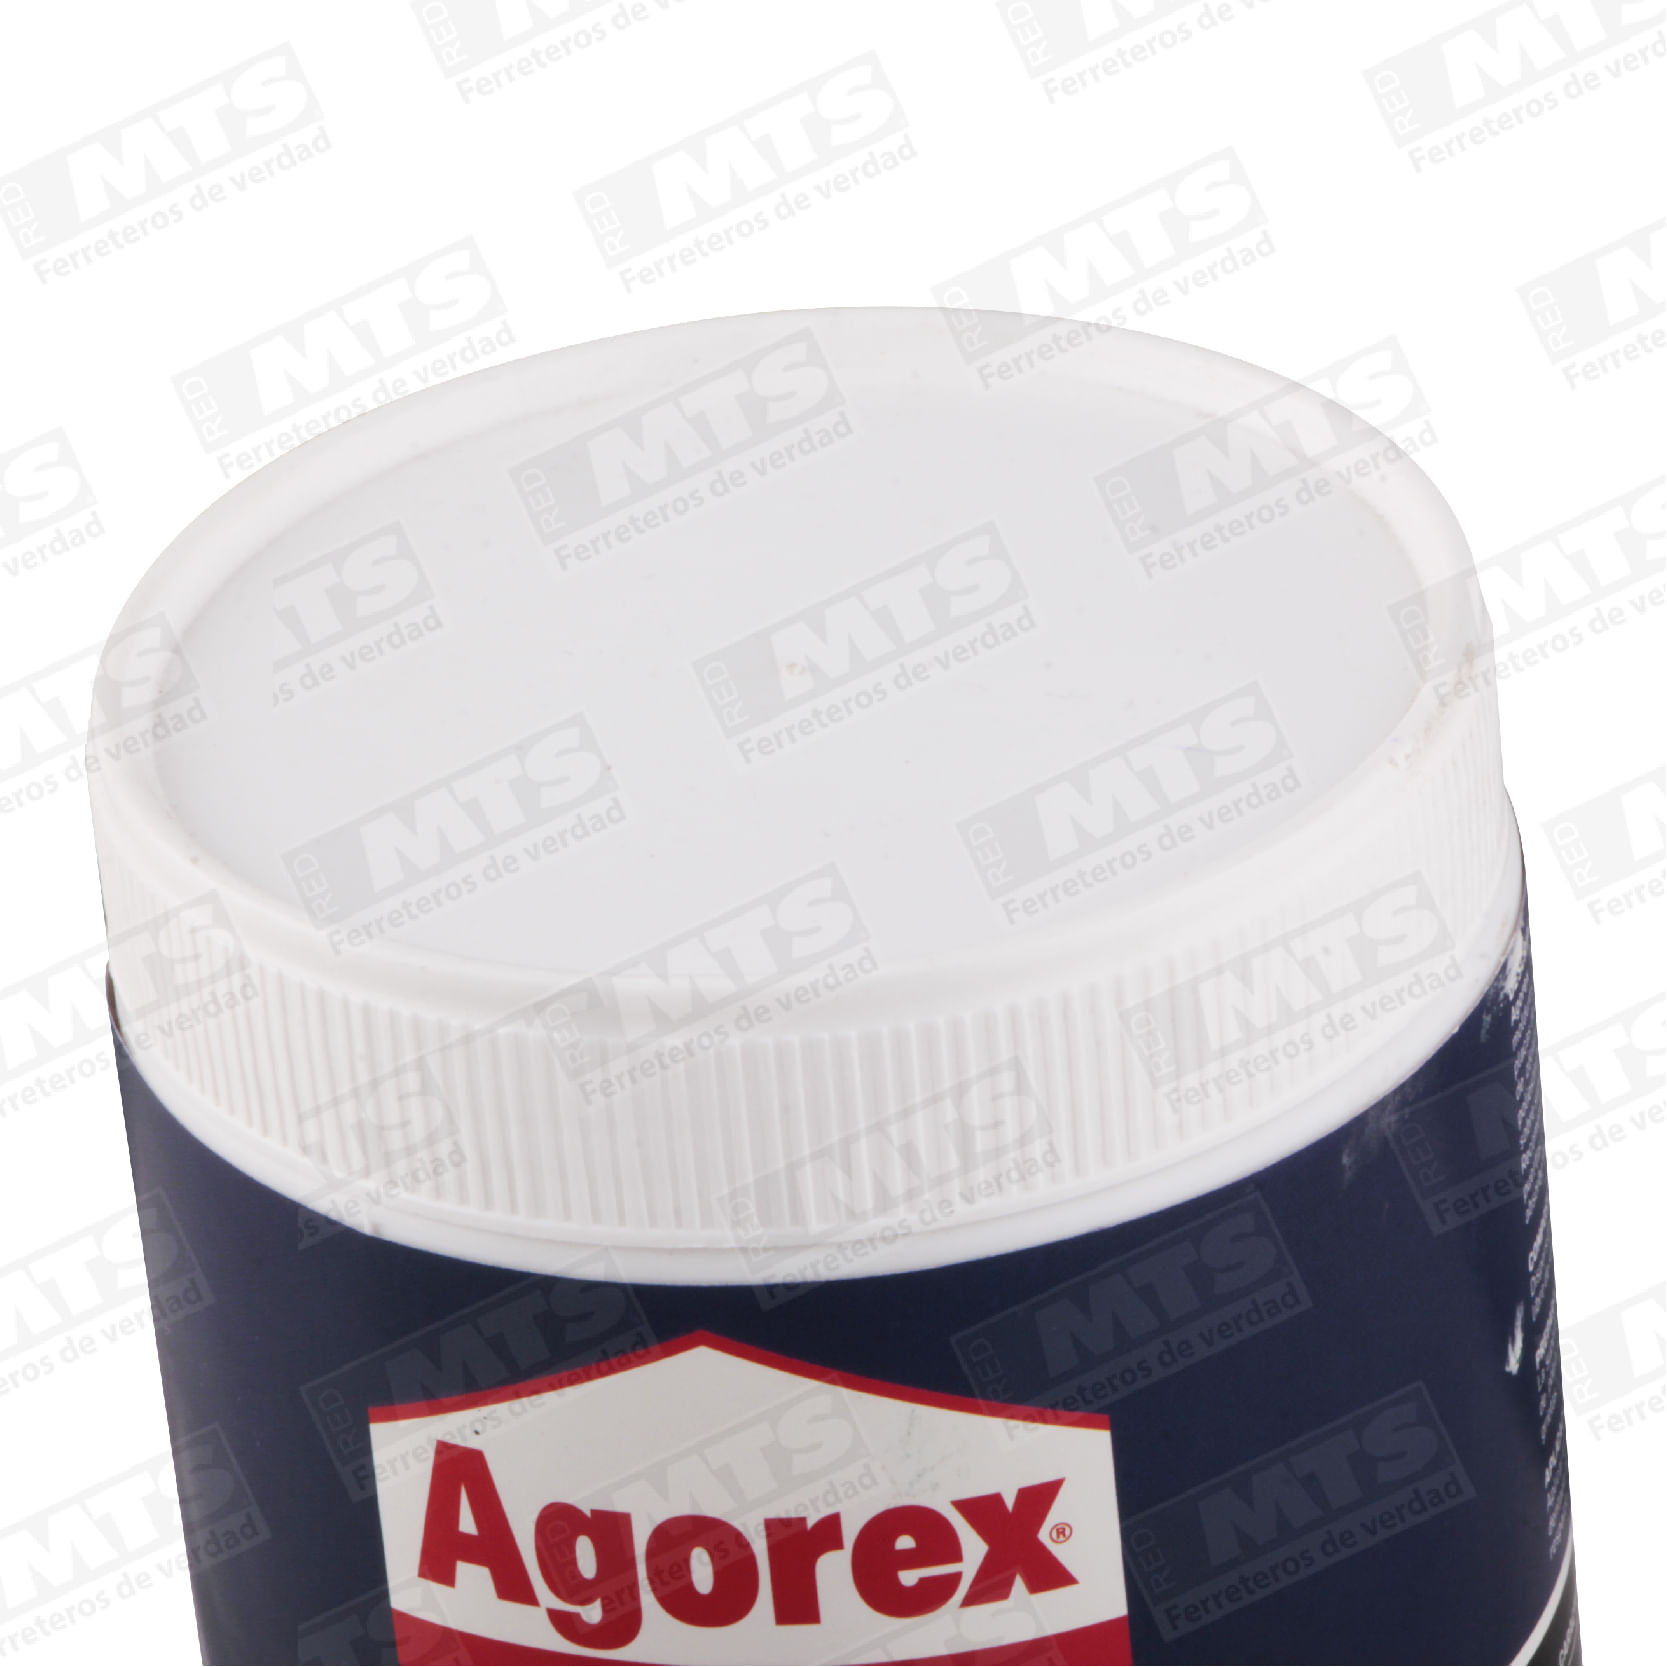 Agorex Henkel Adhesivo Montaje Pl500 800grs